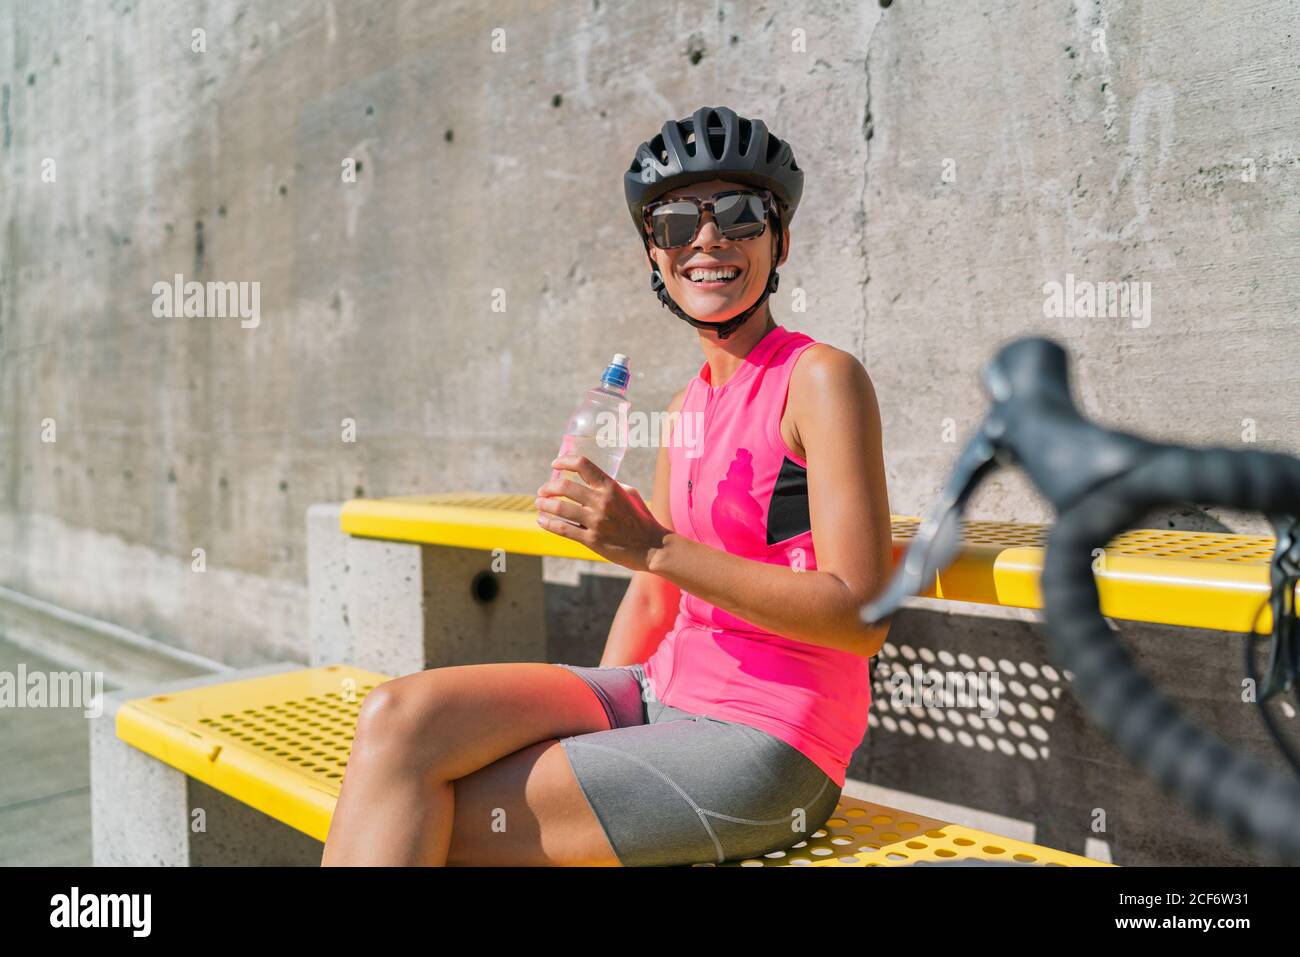 Glücklicher Radfahrer Trinkflasche, müde von Hitze Erschöpfung, eine Pause während der Radtour in der Stadt. Frau, die sich mit dem Rennrad ausruhen und sich mit Wasser versorgen kann Stockfoto